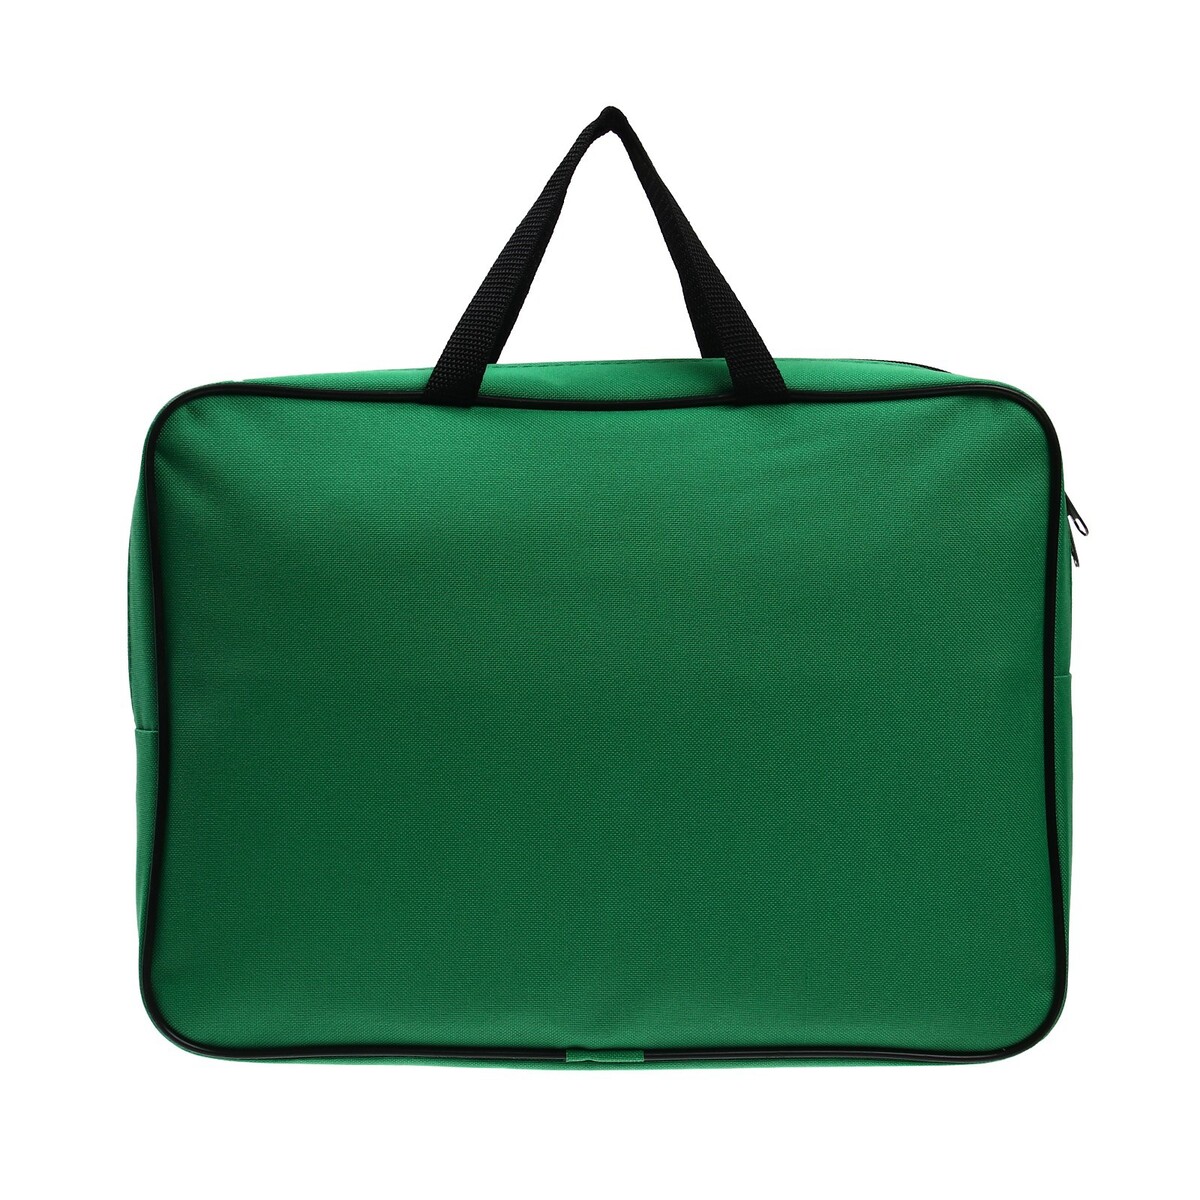 Папка с ручками а4, 360 х 270 х 80 мм, текстильная, внутренний карман, зеленая 1ш48 сумка текстильная одно 32 3 38 отд на молнии н карман желтый